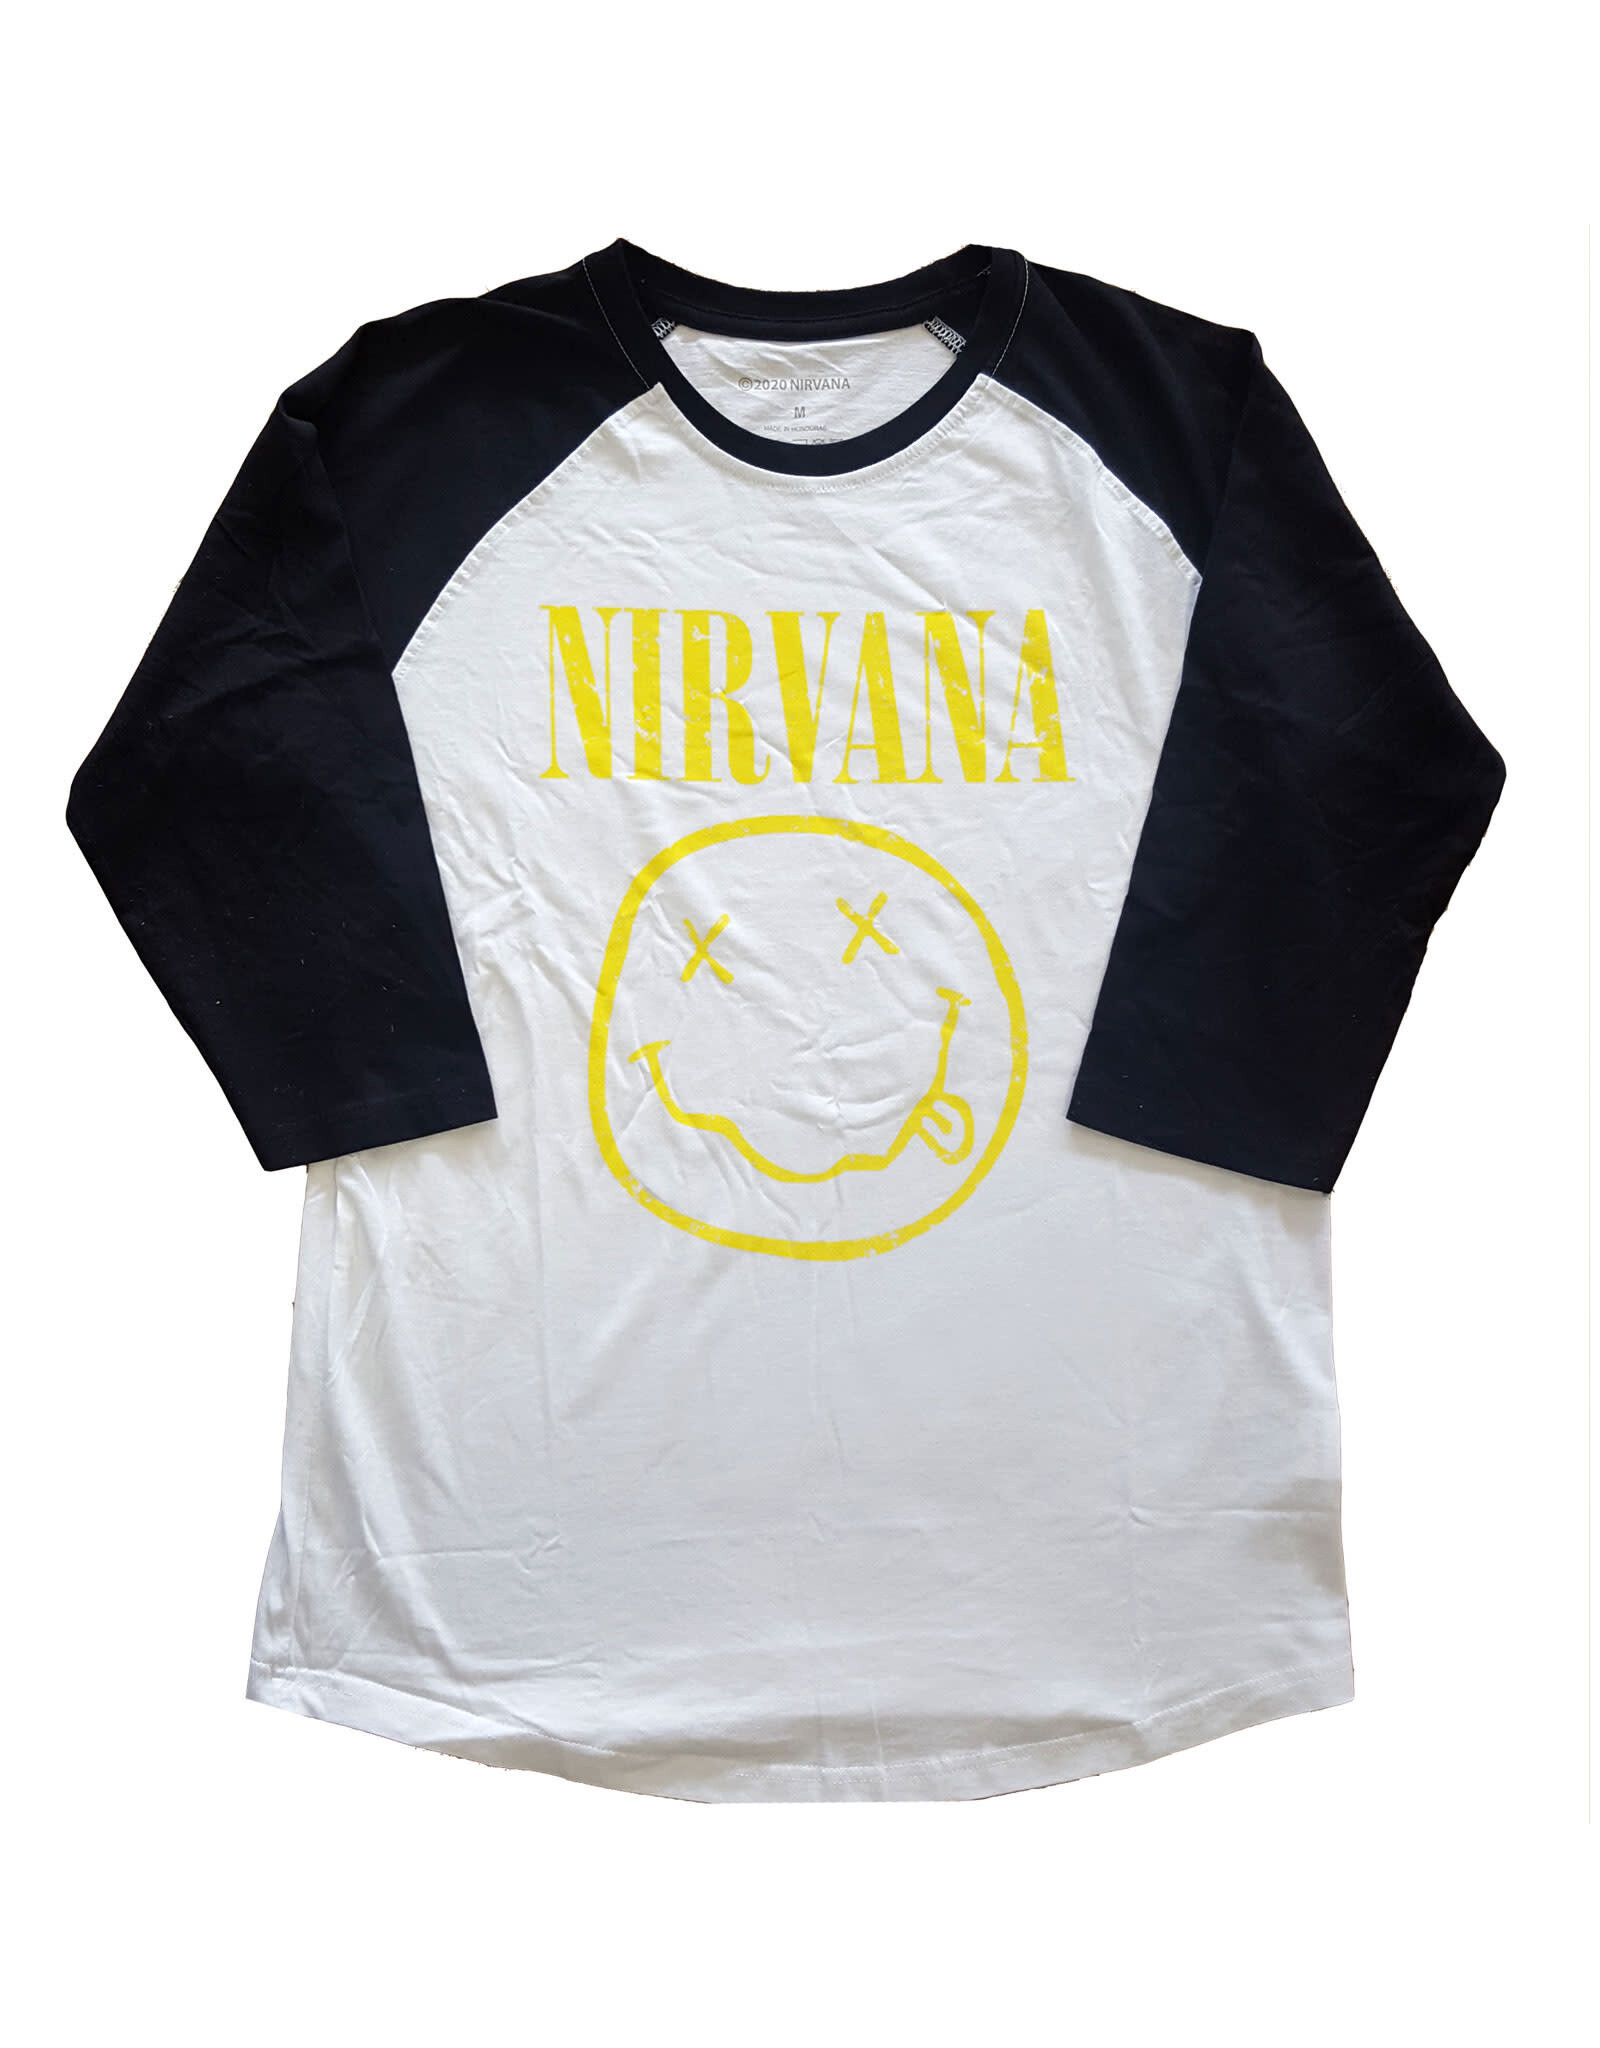 Nirvana / Smiley Face Raglan Tee